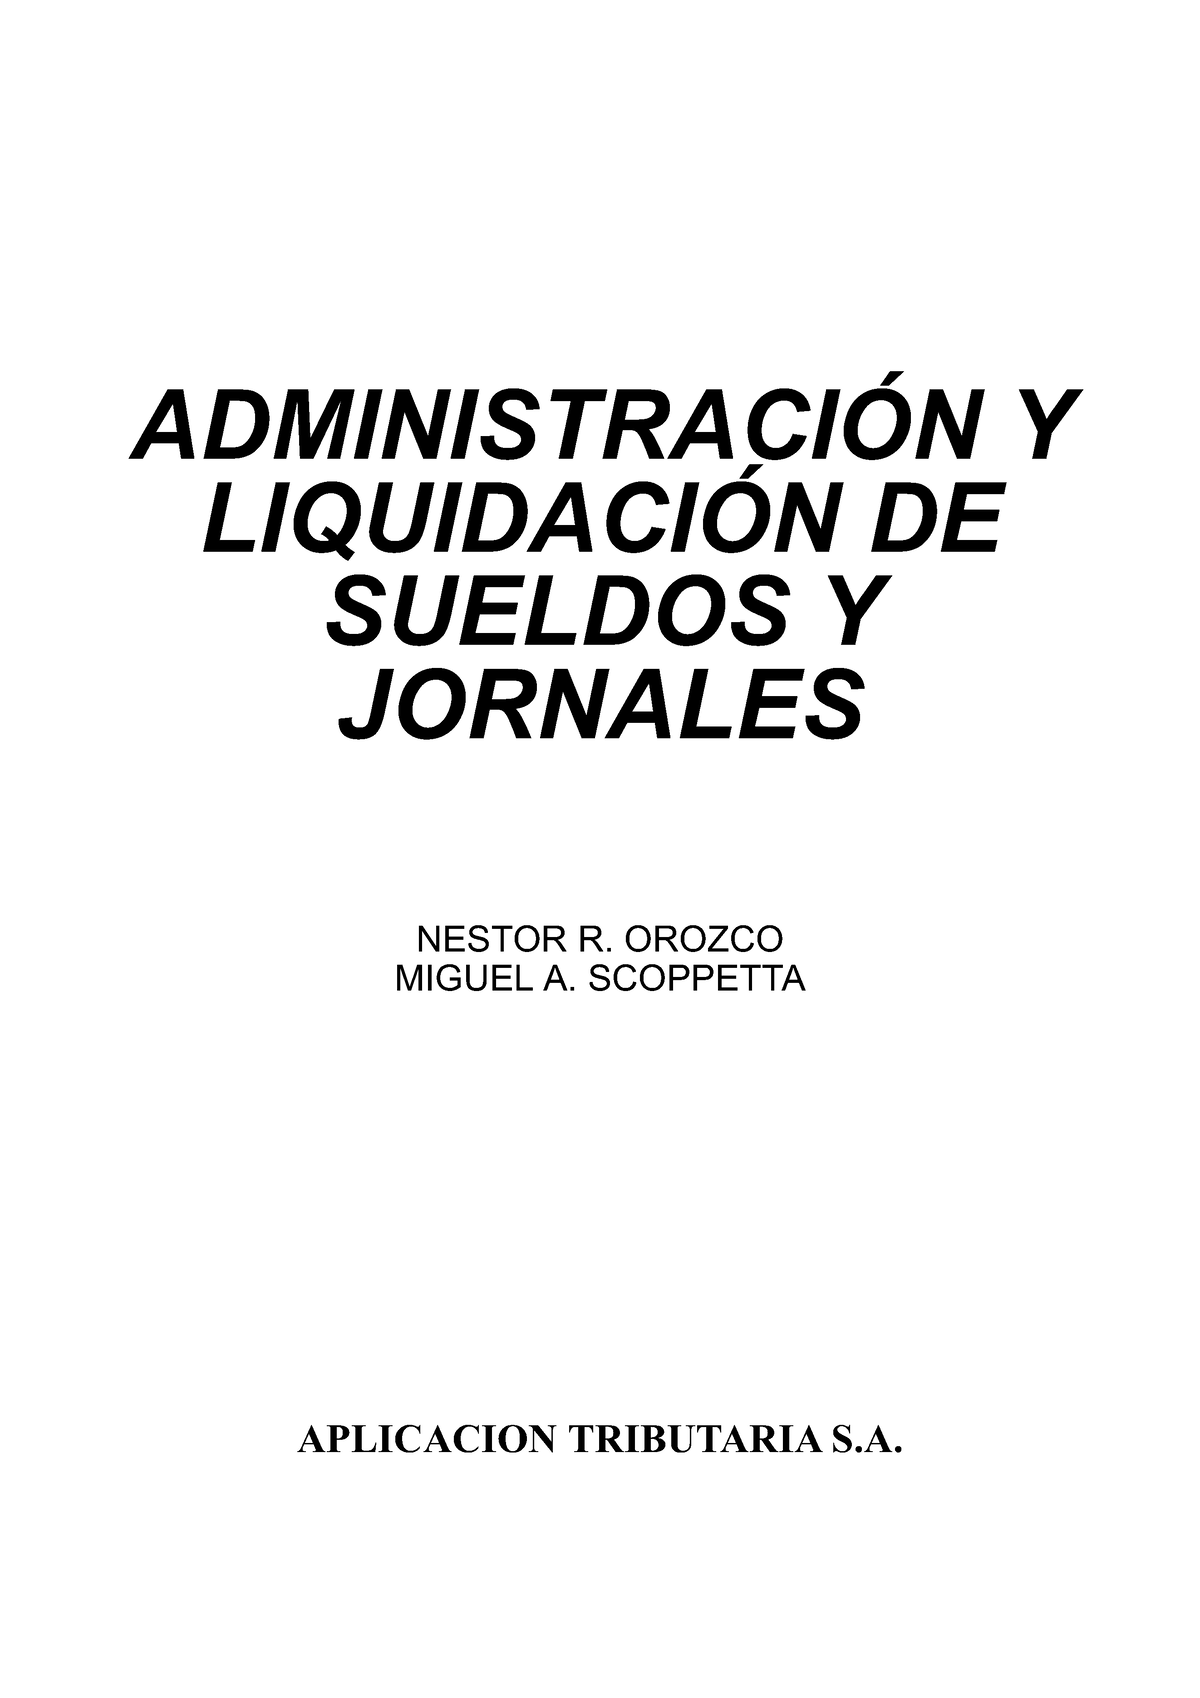 Administracion Y Liquidacion De Sueldos Y Jornales AdministraciÓn Y LiquidaciÓn De Sueldos Y 7059